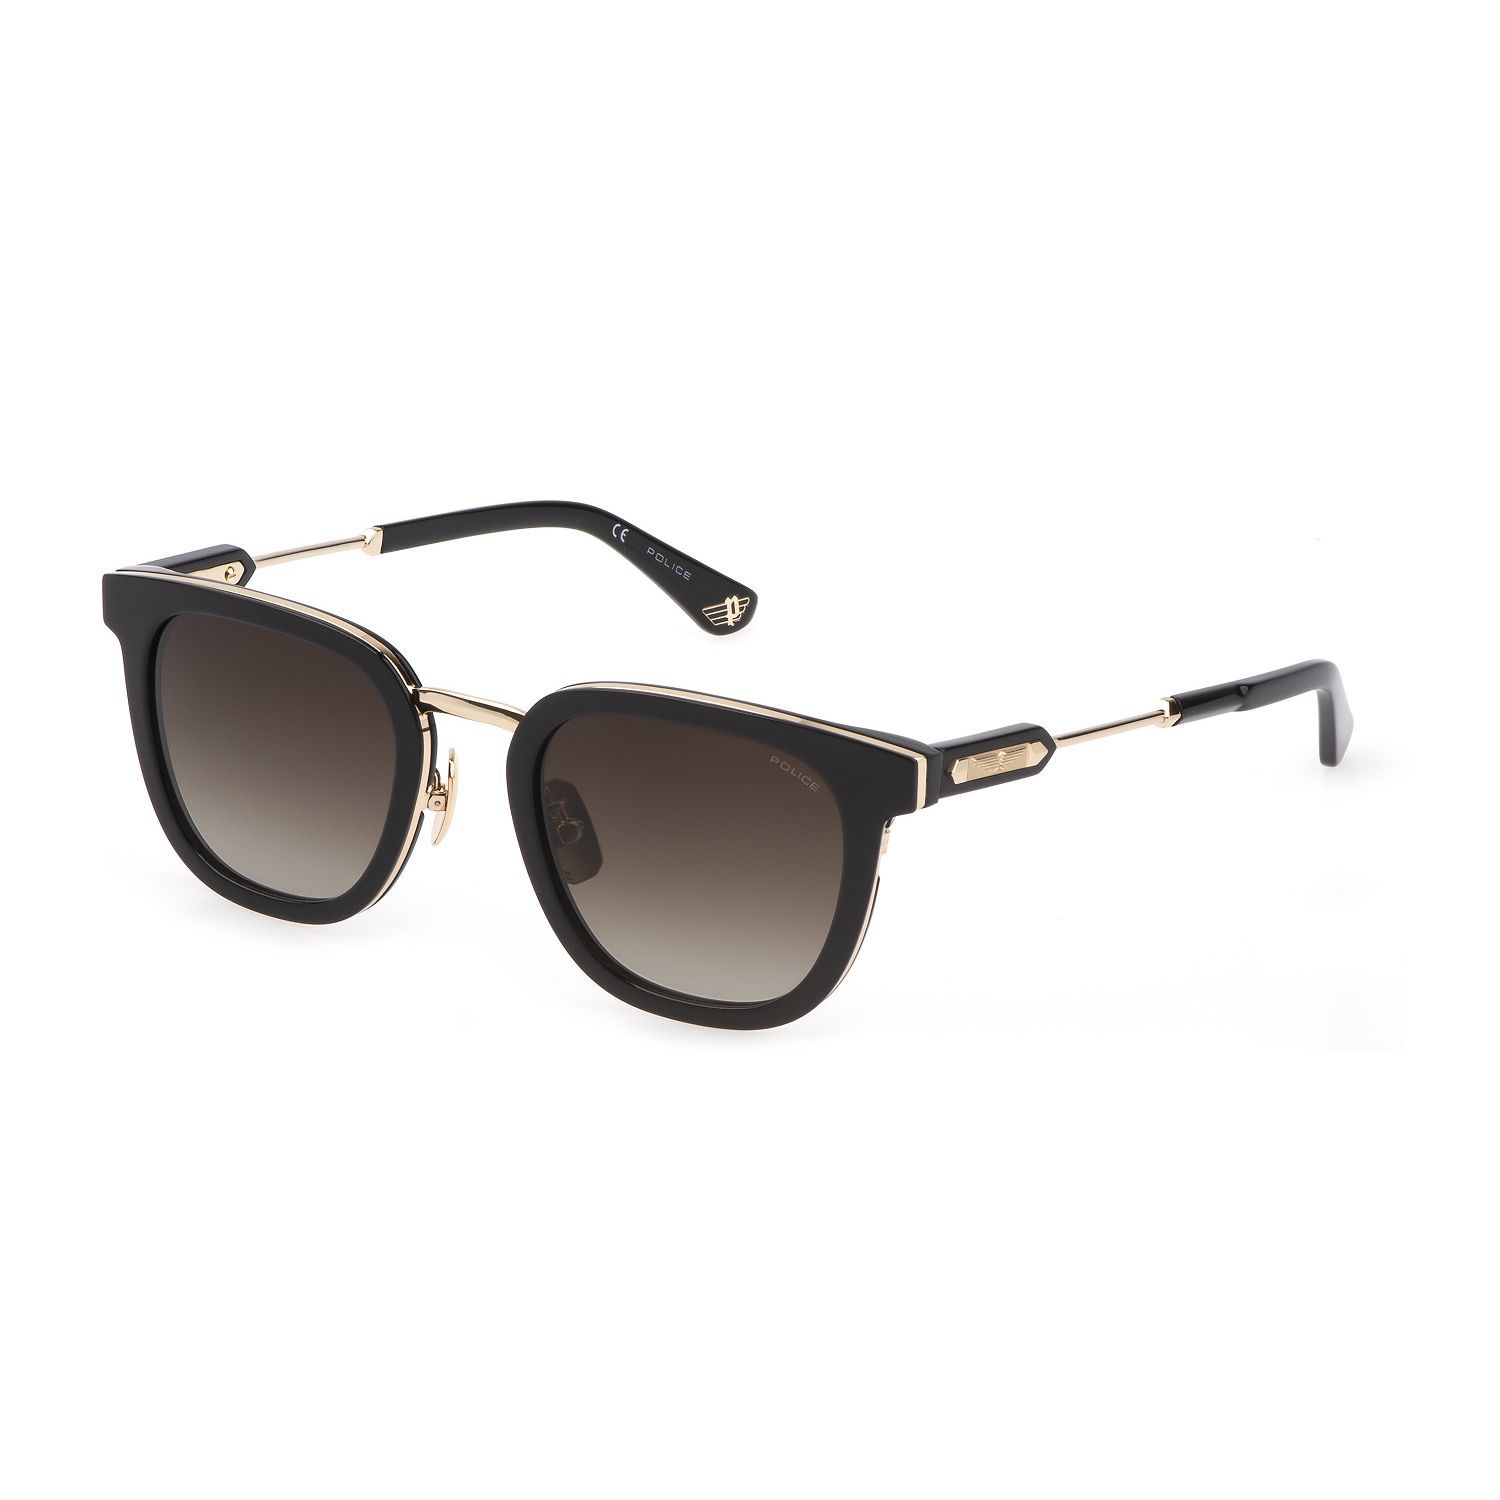 SPLF19M Panthos Sunglasses 700 - size 51